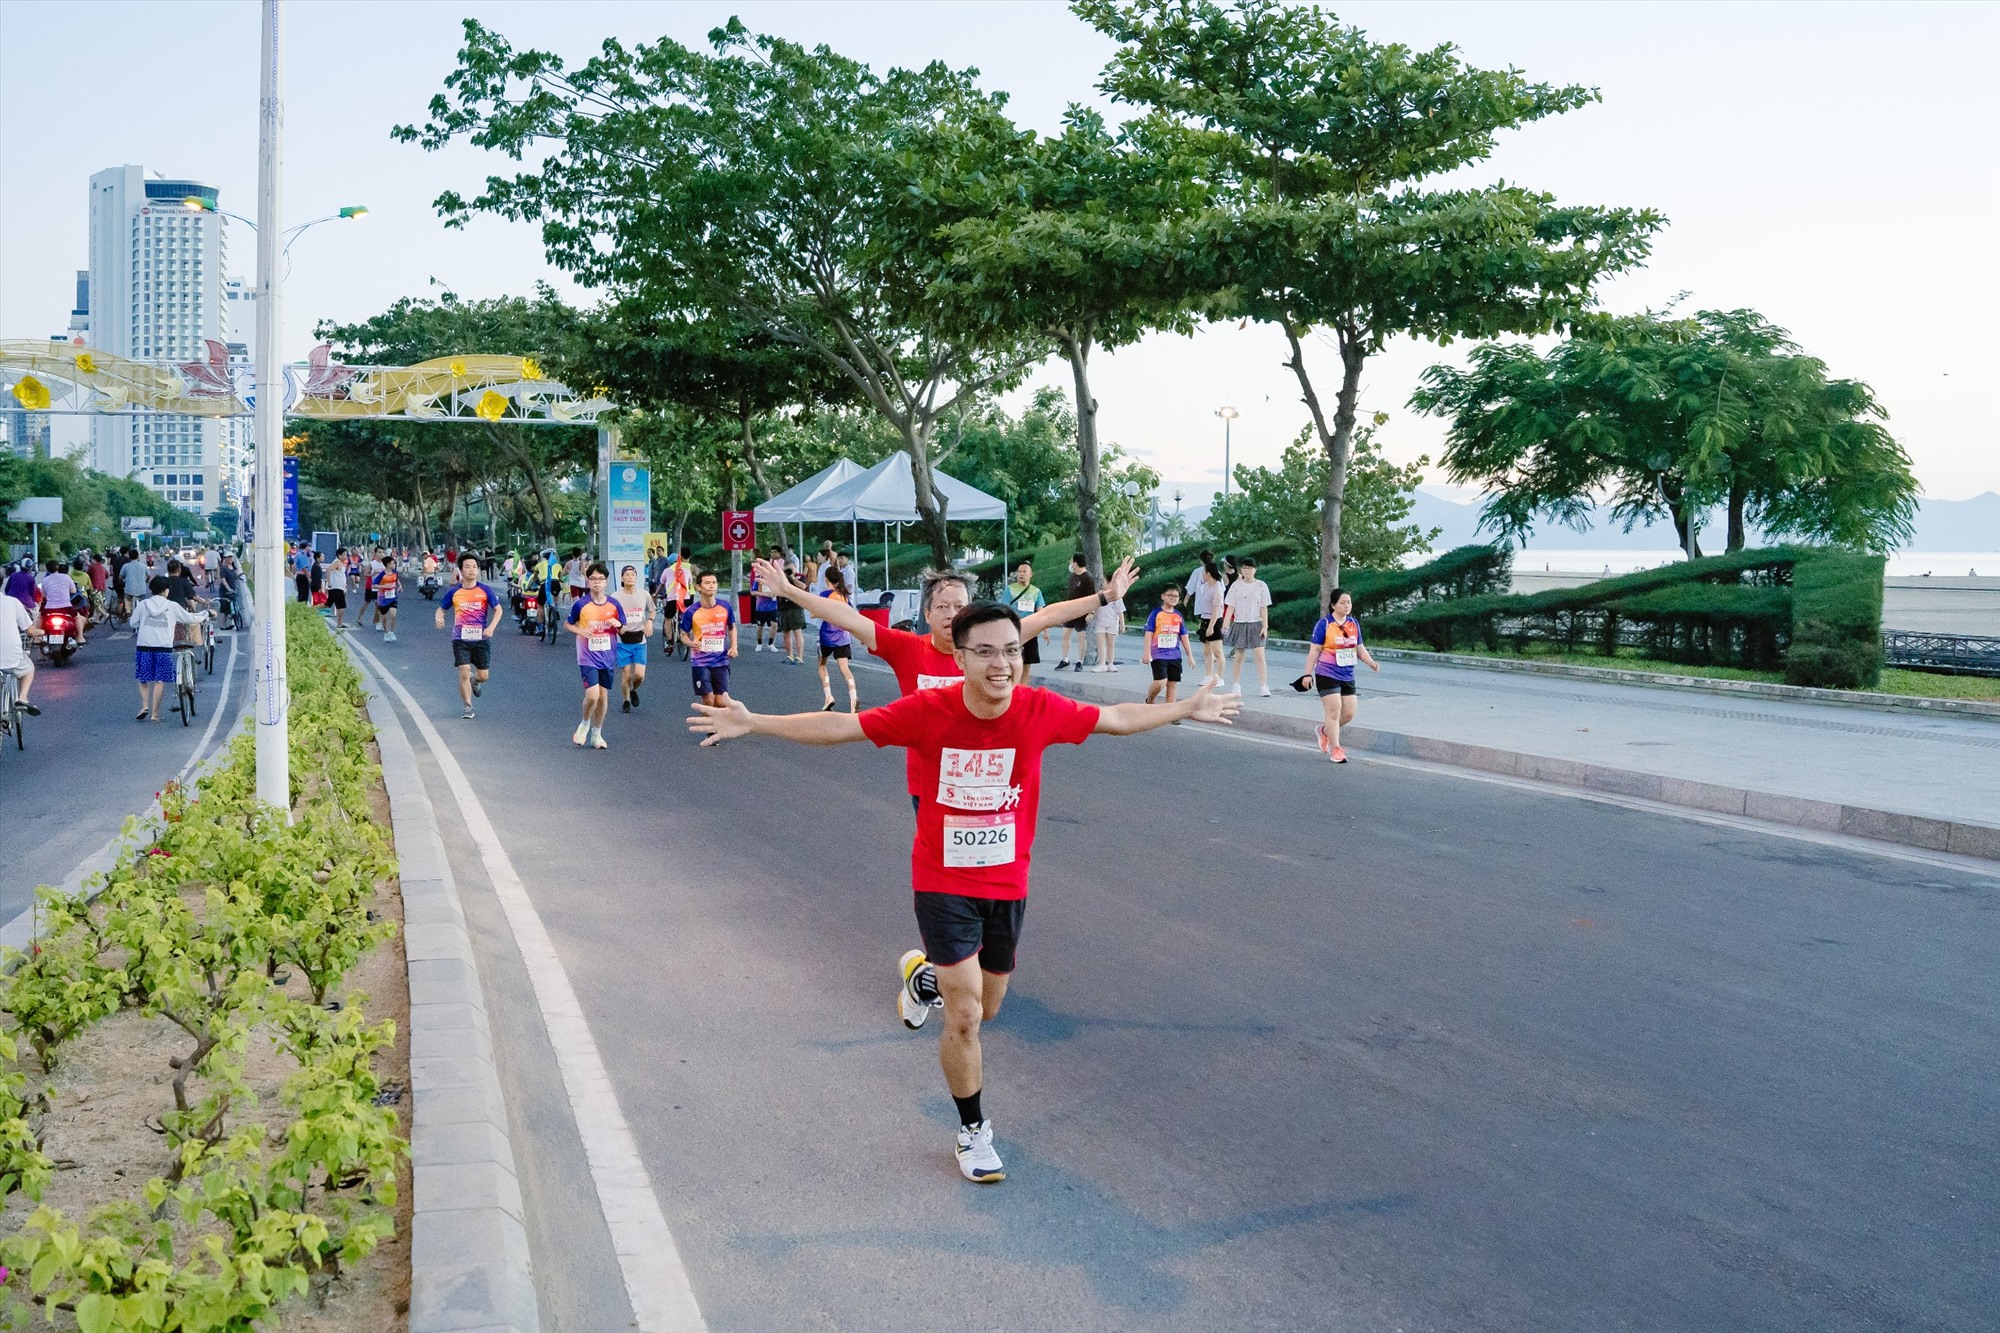 SABECO lần đầu đồng hành giải chạy VnExpress Marathon Nha Trang 2023 nhằm nâng cao sức khoẻ, cổ vũ lối sống lành mạnh trong cộng đồng. Nguồn: SABECO